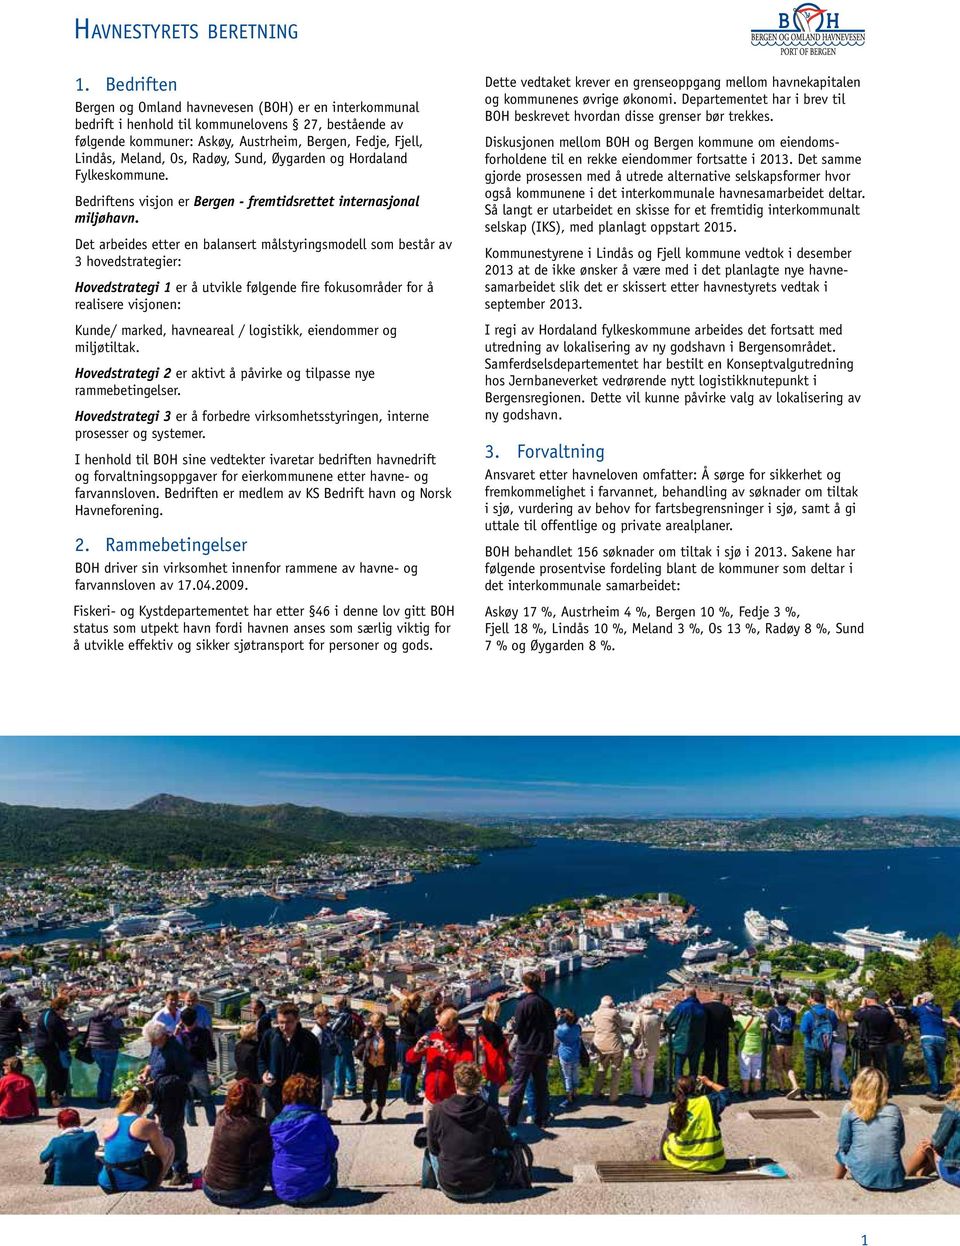 Radøy, Sund, Øygarden og Hordaland Fylkeskommune. Bedriftens visjon er Bergen - fremtidsrettet internasjonal miljøhavn.